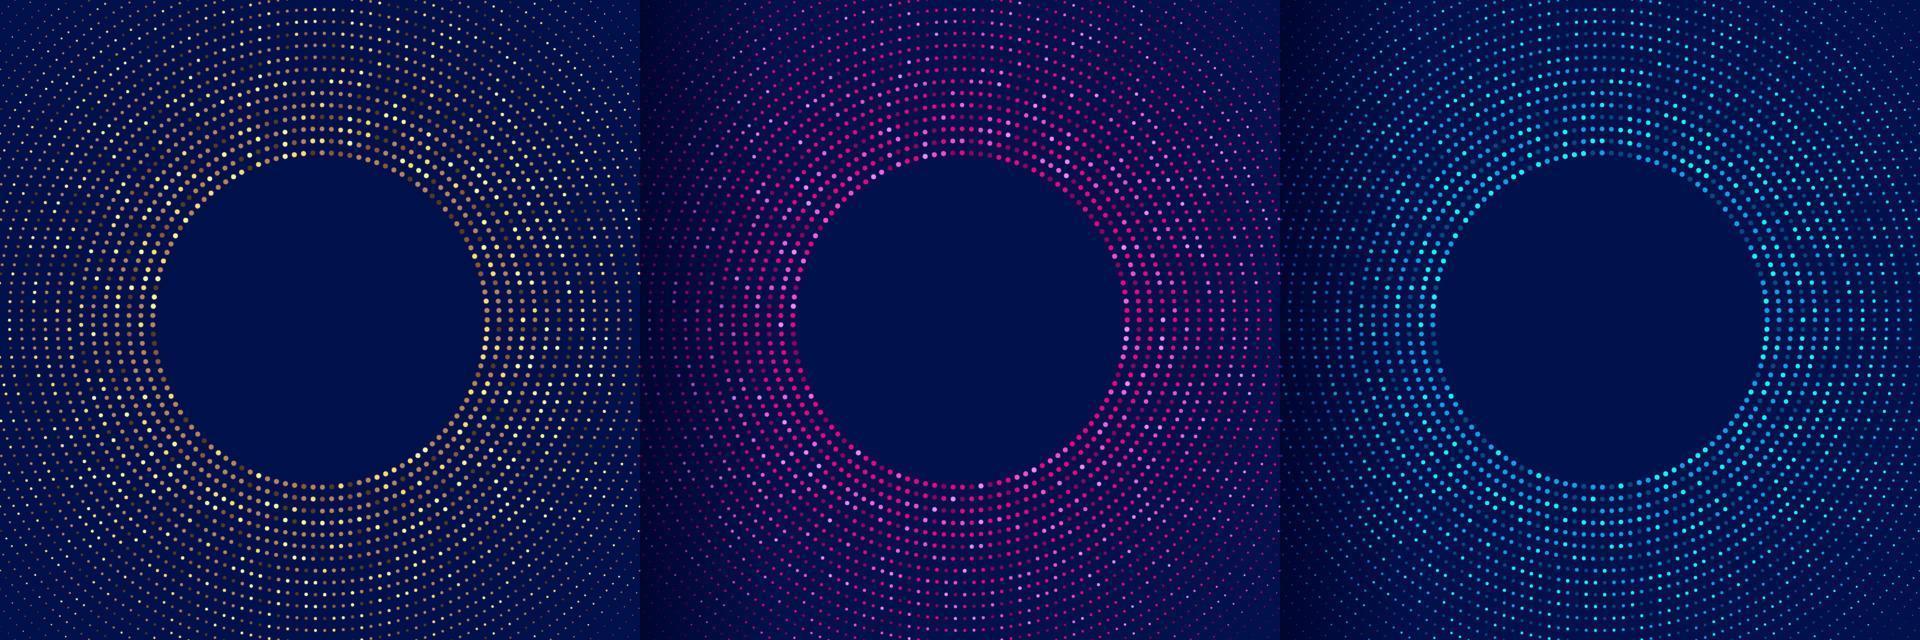 conjunto de padrão radial de brilho de ponto de luz brilhante abstrato rosa, azul, verde, dourado sobre fundo azul escuro. coleção de meio-tom de pontos iluminados. conceito de tecnologia futurista. ilustração vetorial vetor